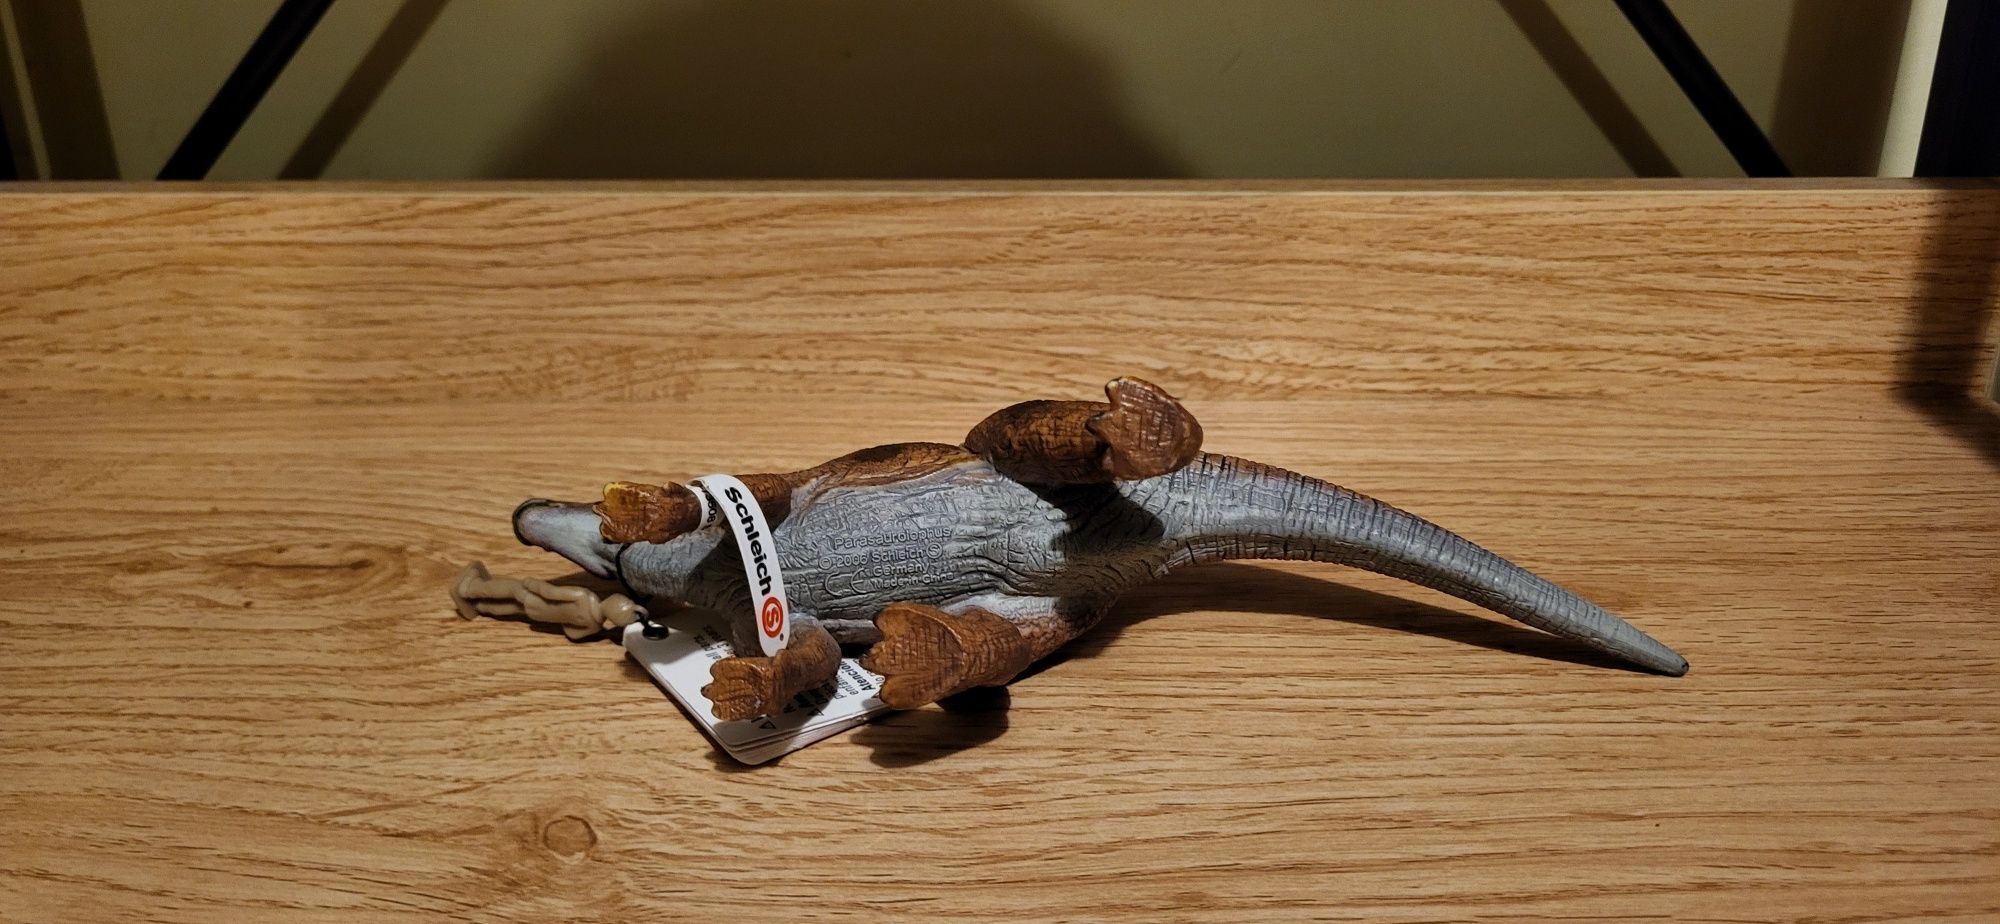 Schleich dinozaur parazaurolof figurka model wycofany 2006